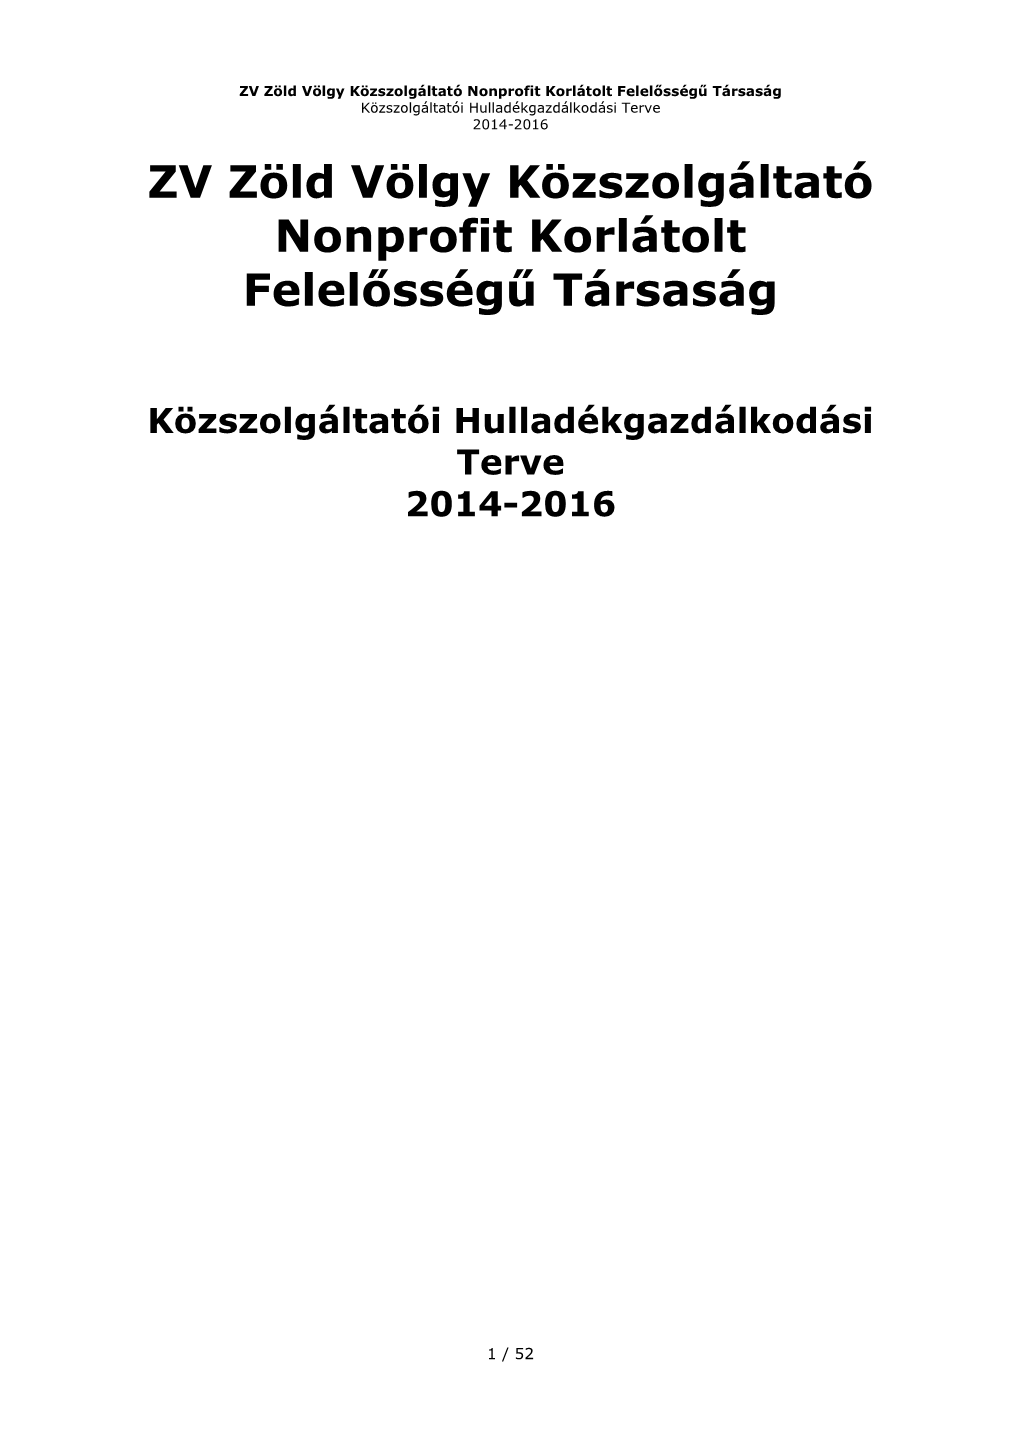 ZV Zöld Völgy Közszolgáltató Nonprofit Korlátolt Felelősségű Társaság Közszolgáltatói Hulladékgazdálkodási Terve 2014-2016